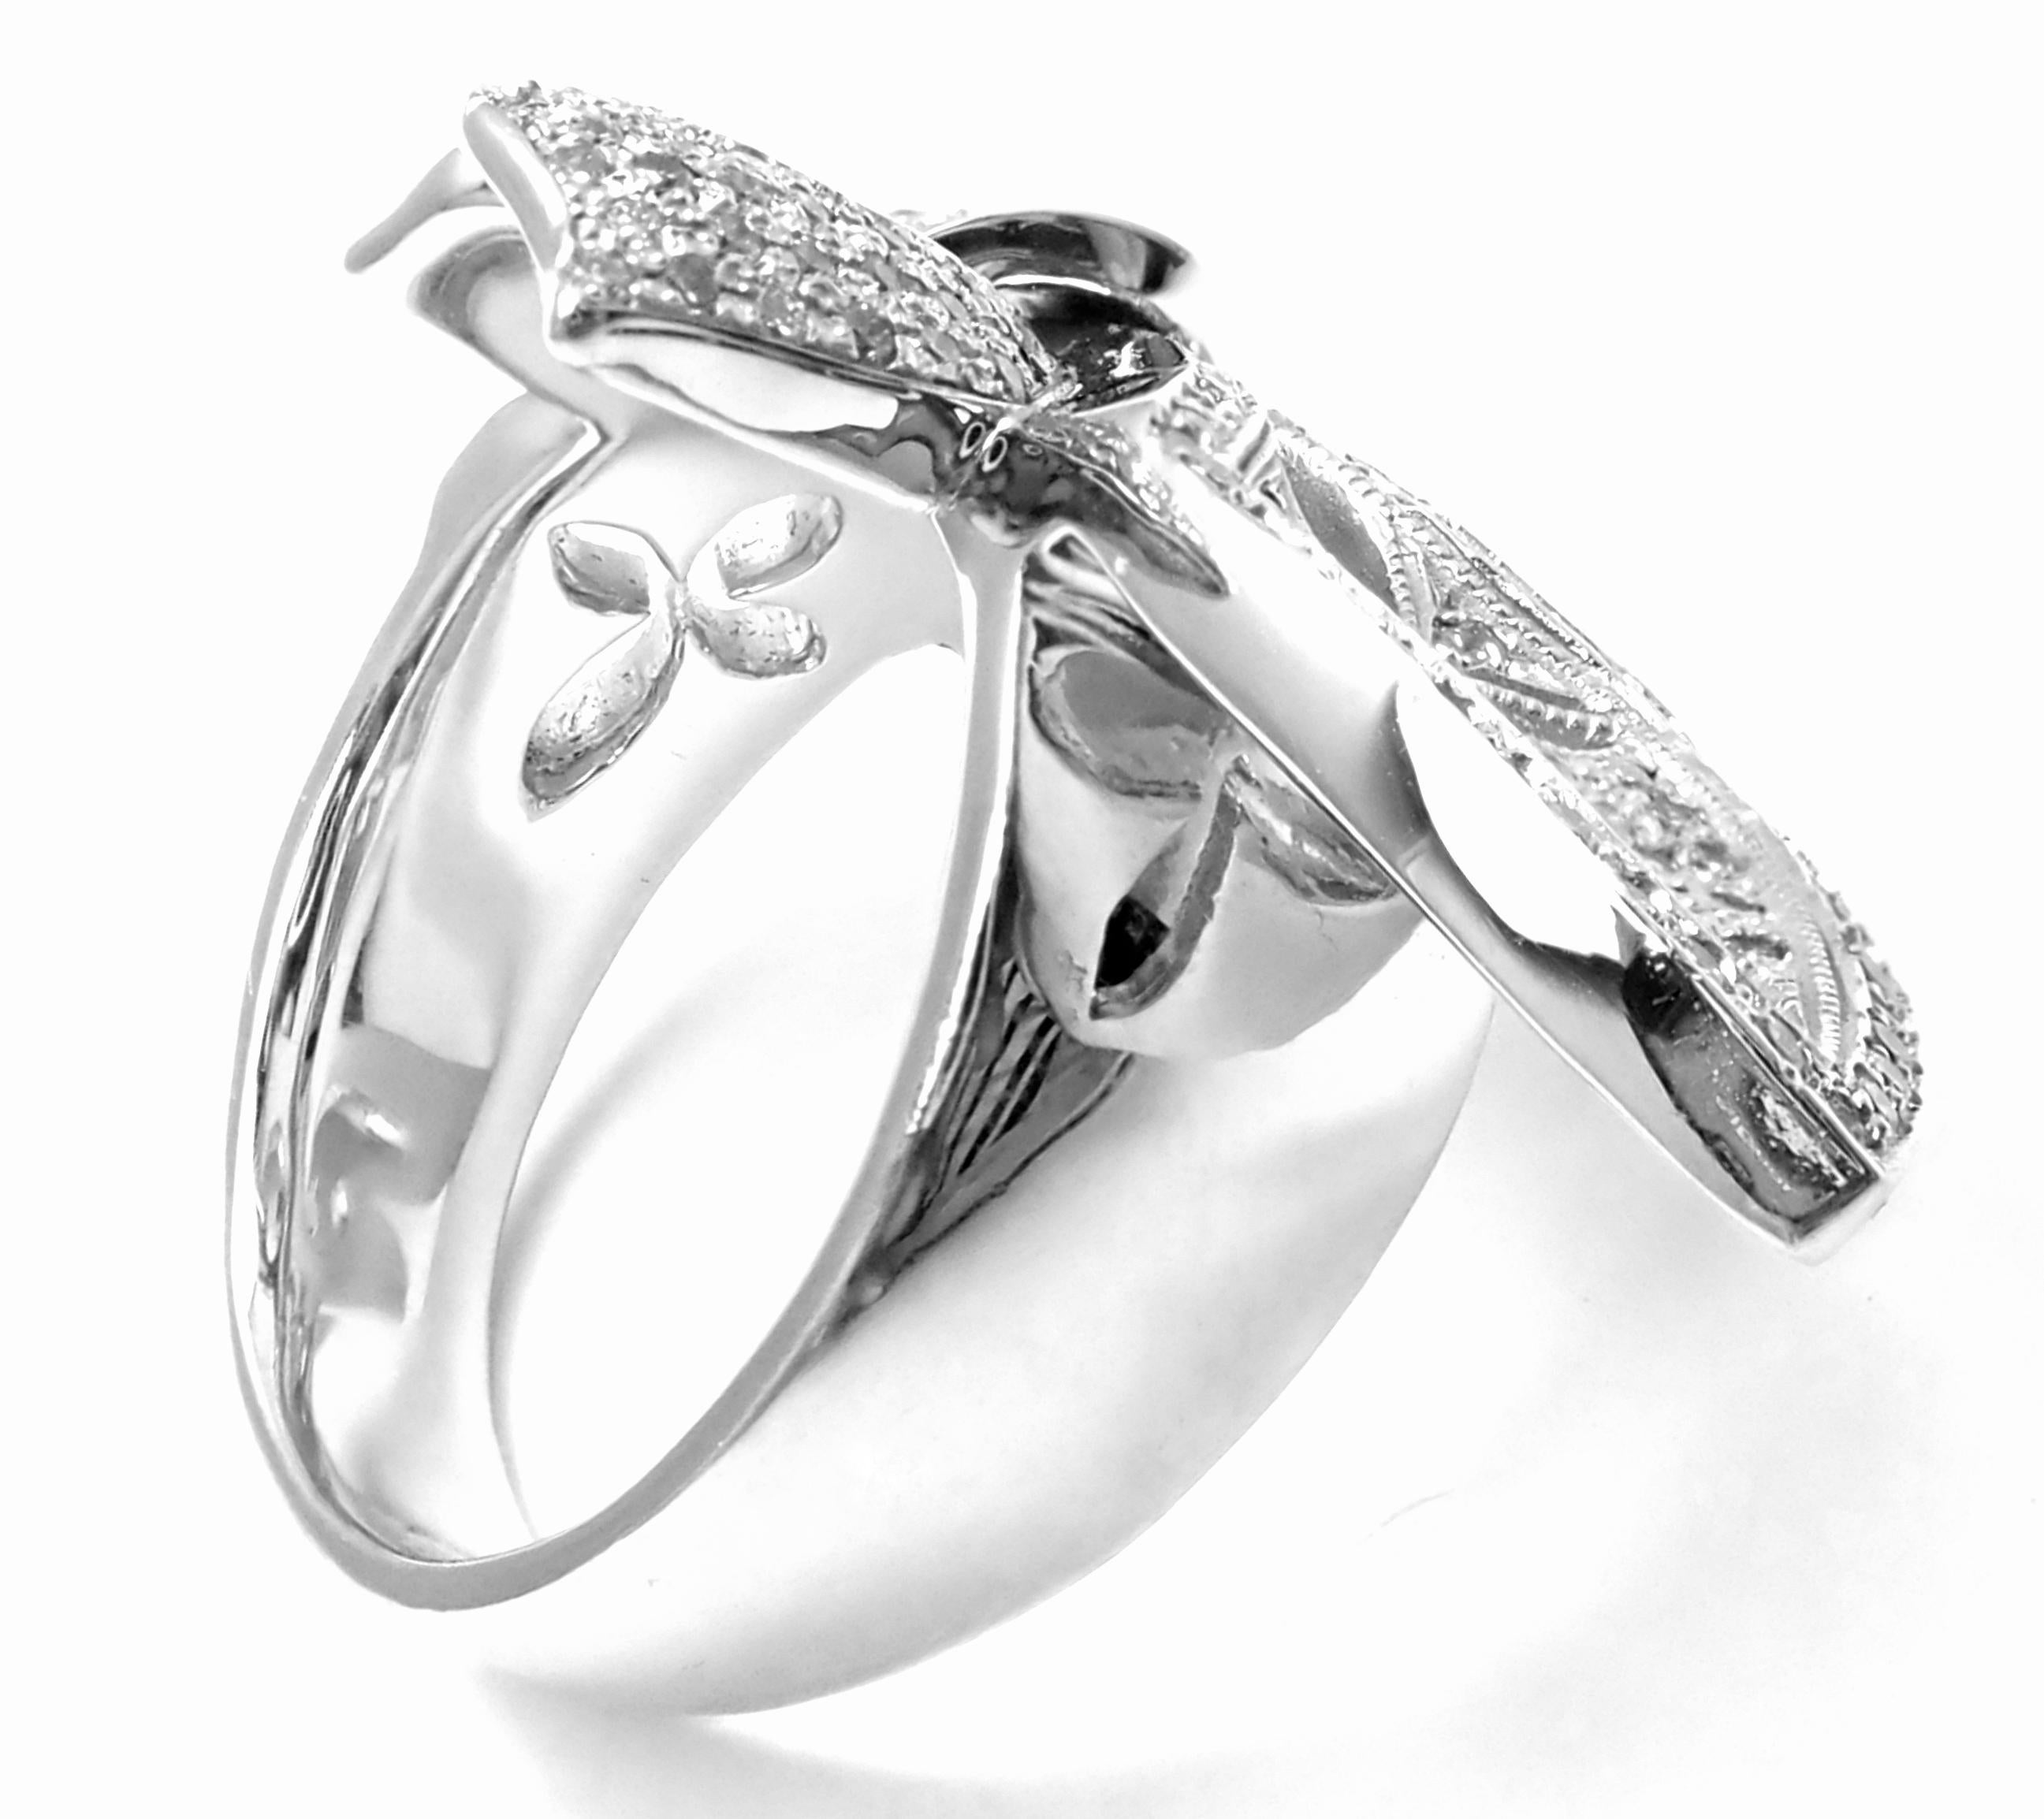 18k White Gold Diamond Large Fleur De Lis Ring von Loree Rodkin. 
Mit  200 Diamanten mit rundem Brillantschliff, Farbe G, Reinheit VSI, Gesamtgewicht ca. 1,5ct  
Dieser Ring wird mit einem Echtheitszertifikat von Loree Rodkin